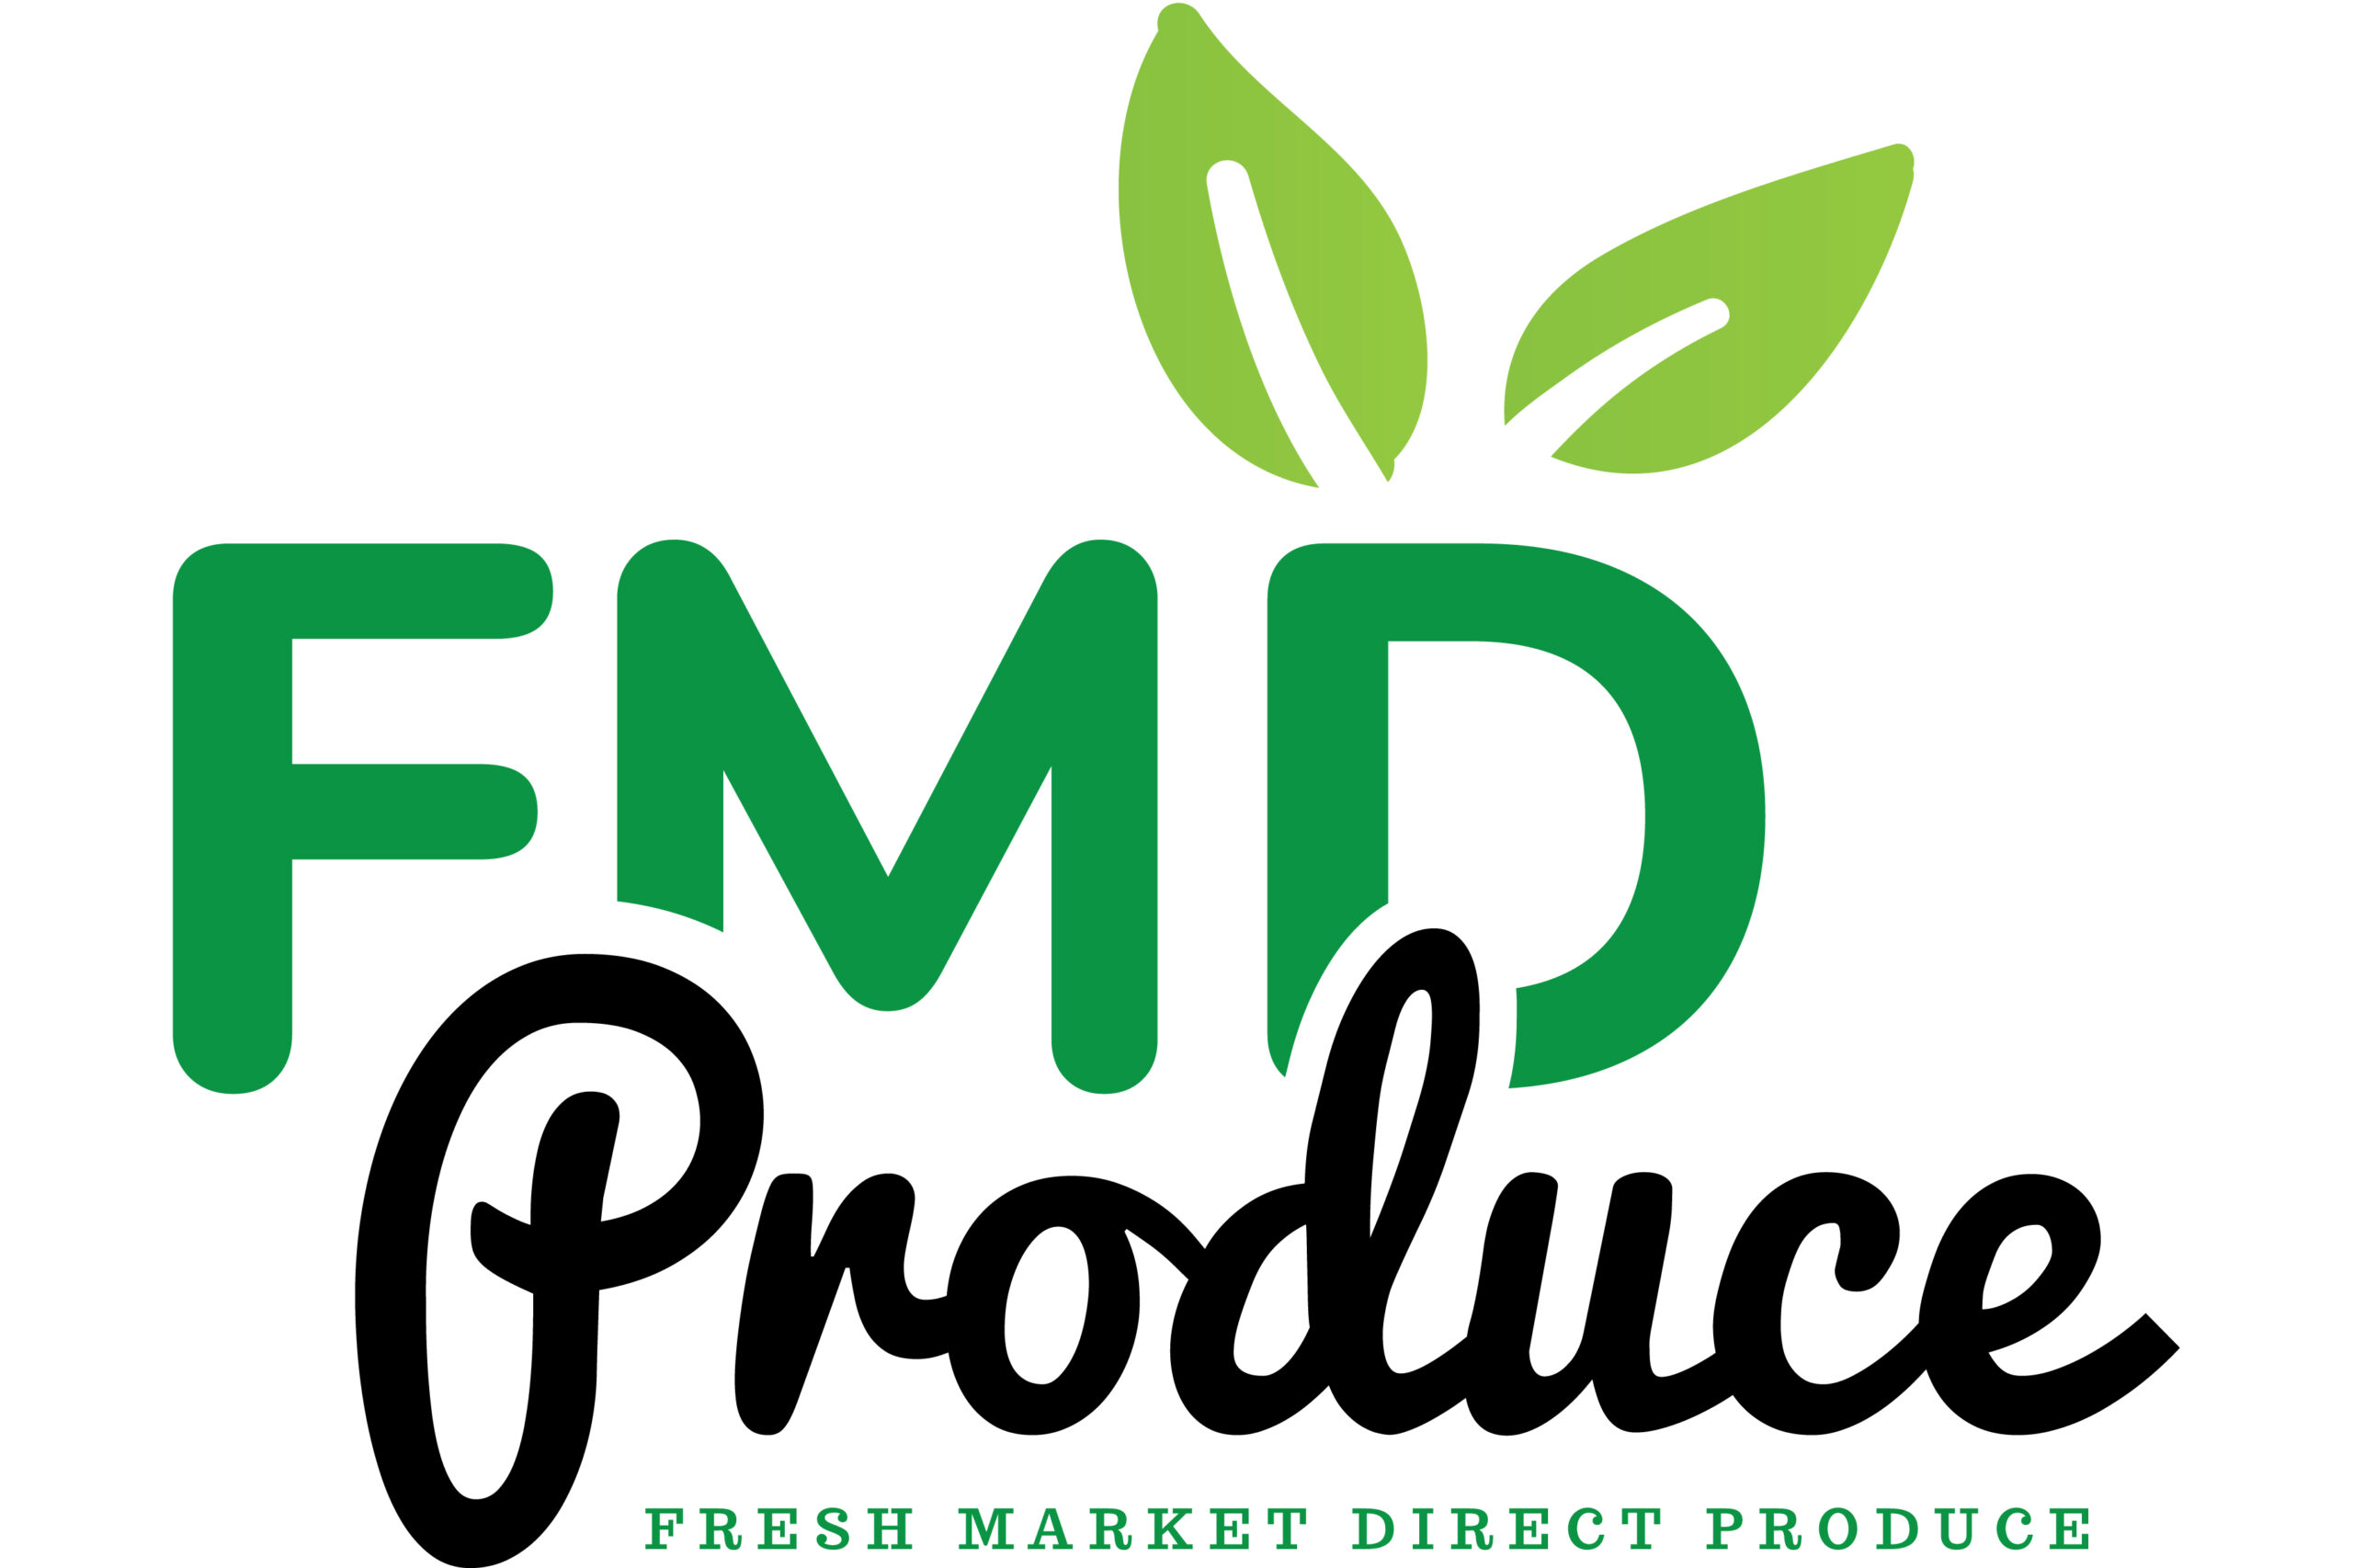 Fresh Market Direct Produce